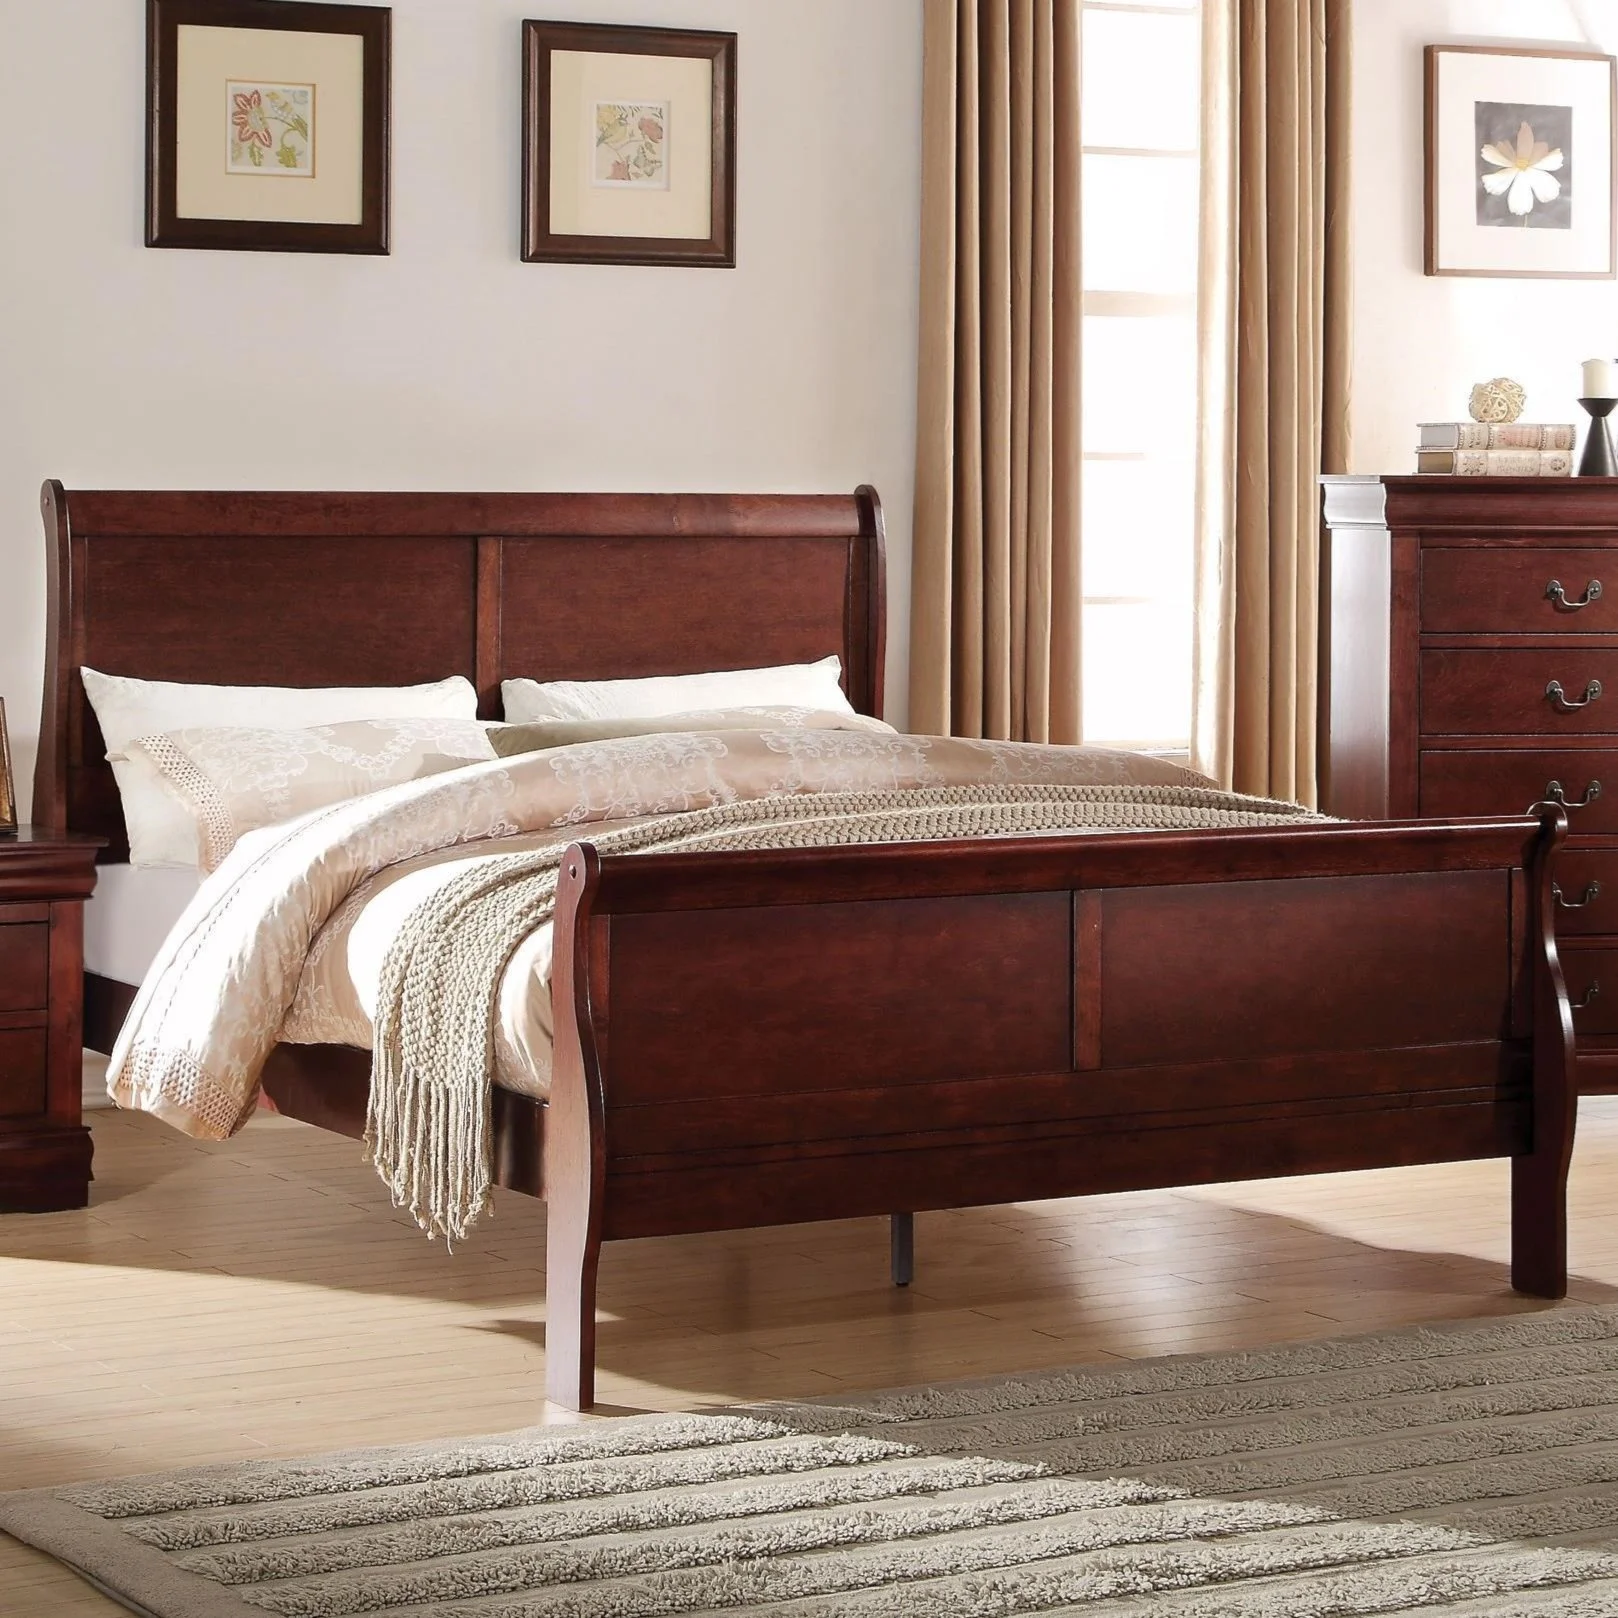 Acme Furniture Louis Philippe Full Bed (FB 29H), A1 Furniture & Mattress